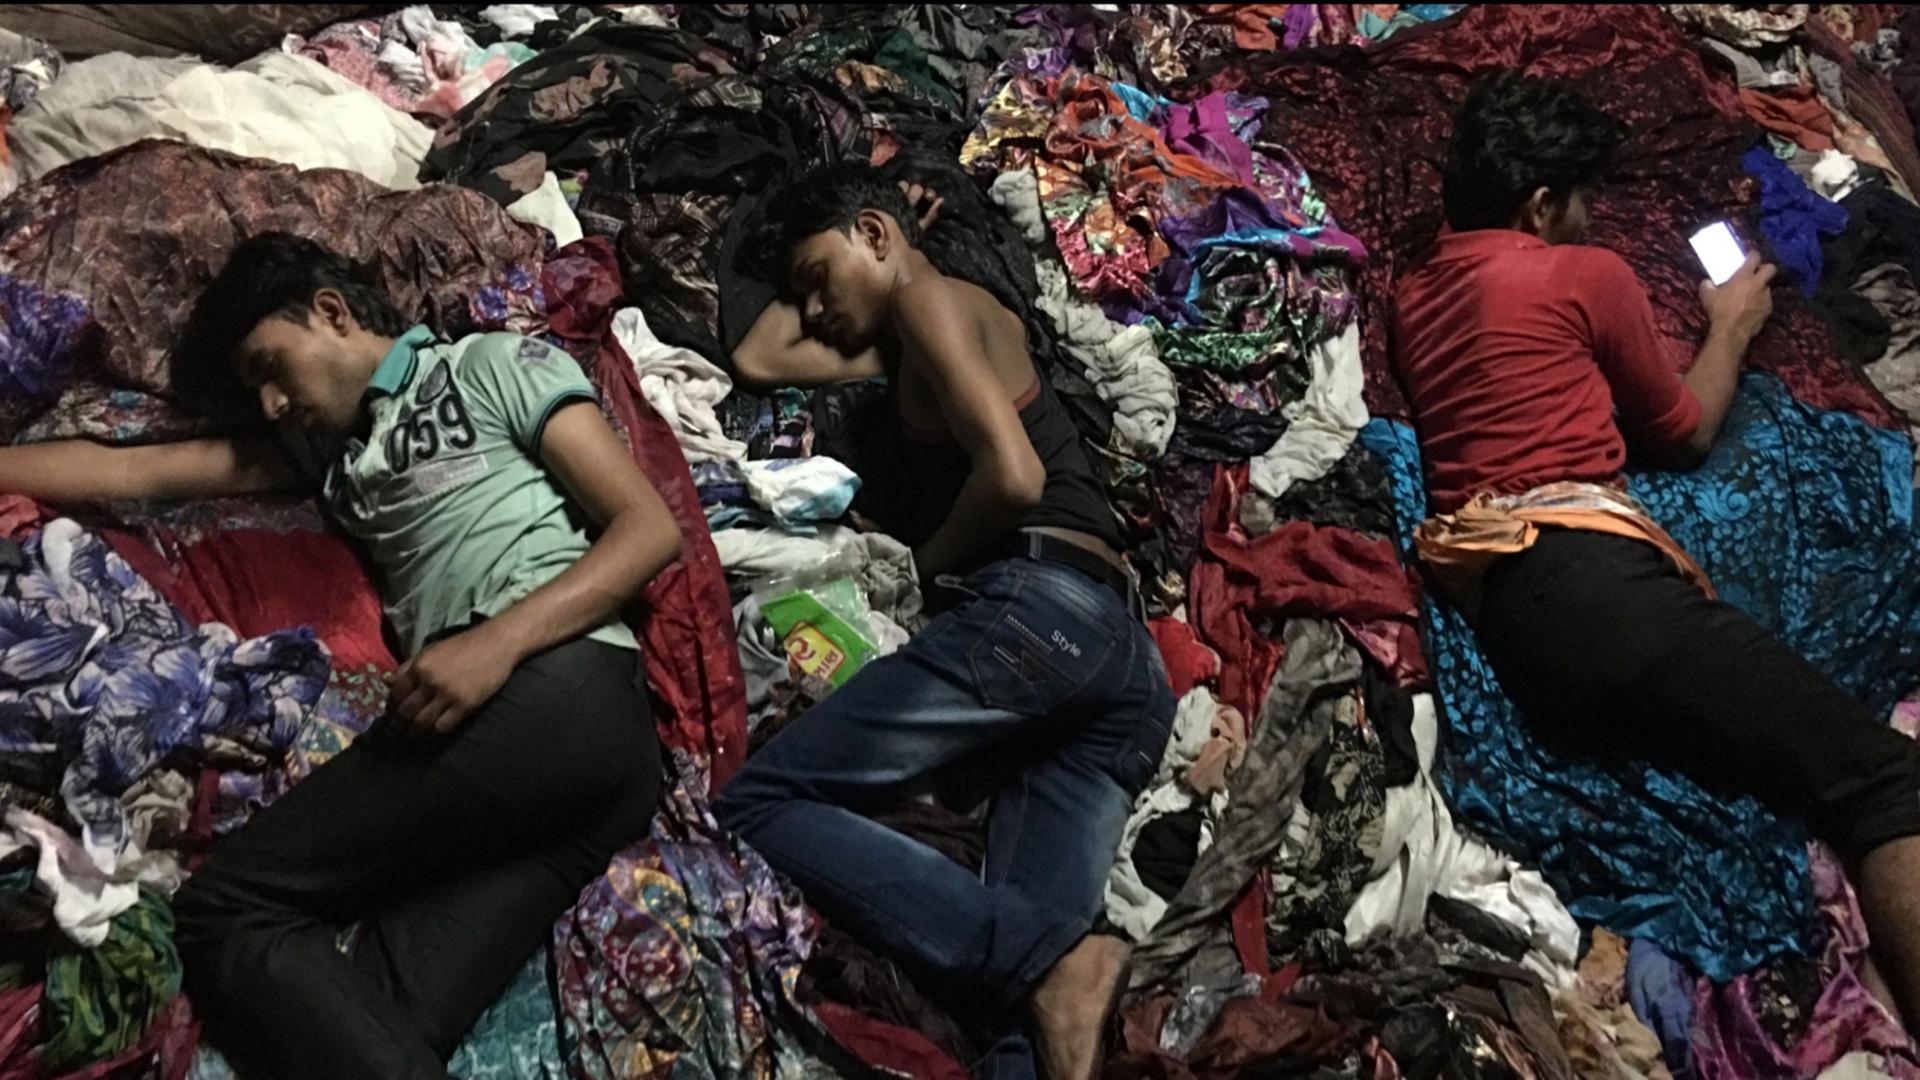 Filmstill aus dem Film "Machines" des indischen Regisseurs Rahul Jain: Arbeiter schlafen vor Erschöpfung während der Arbeitszeit in einer indischen Textilfabrik